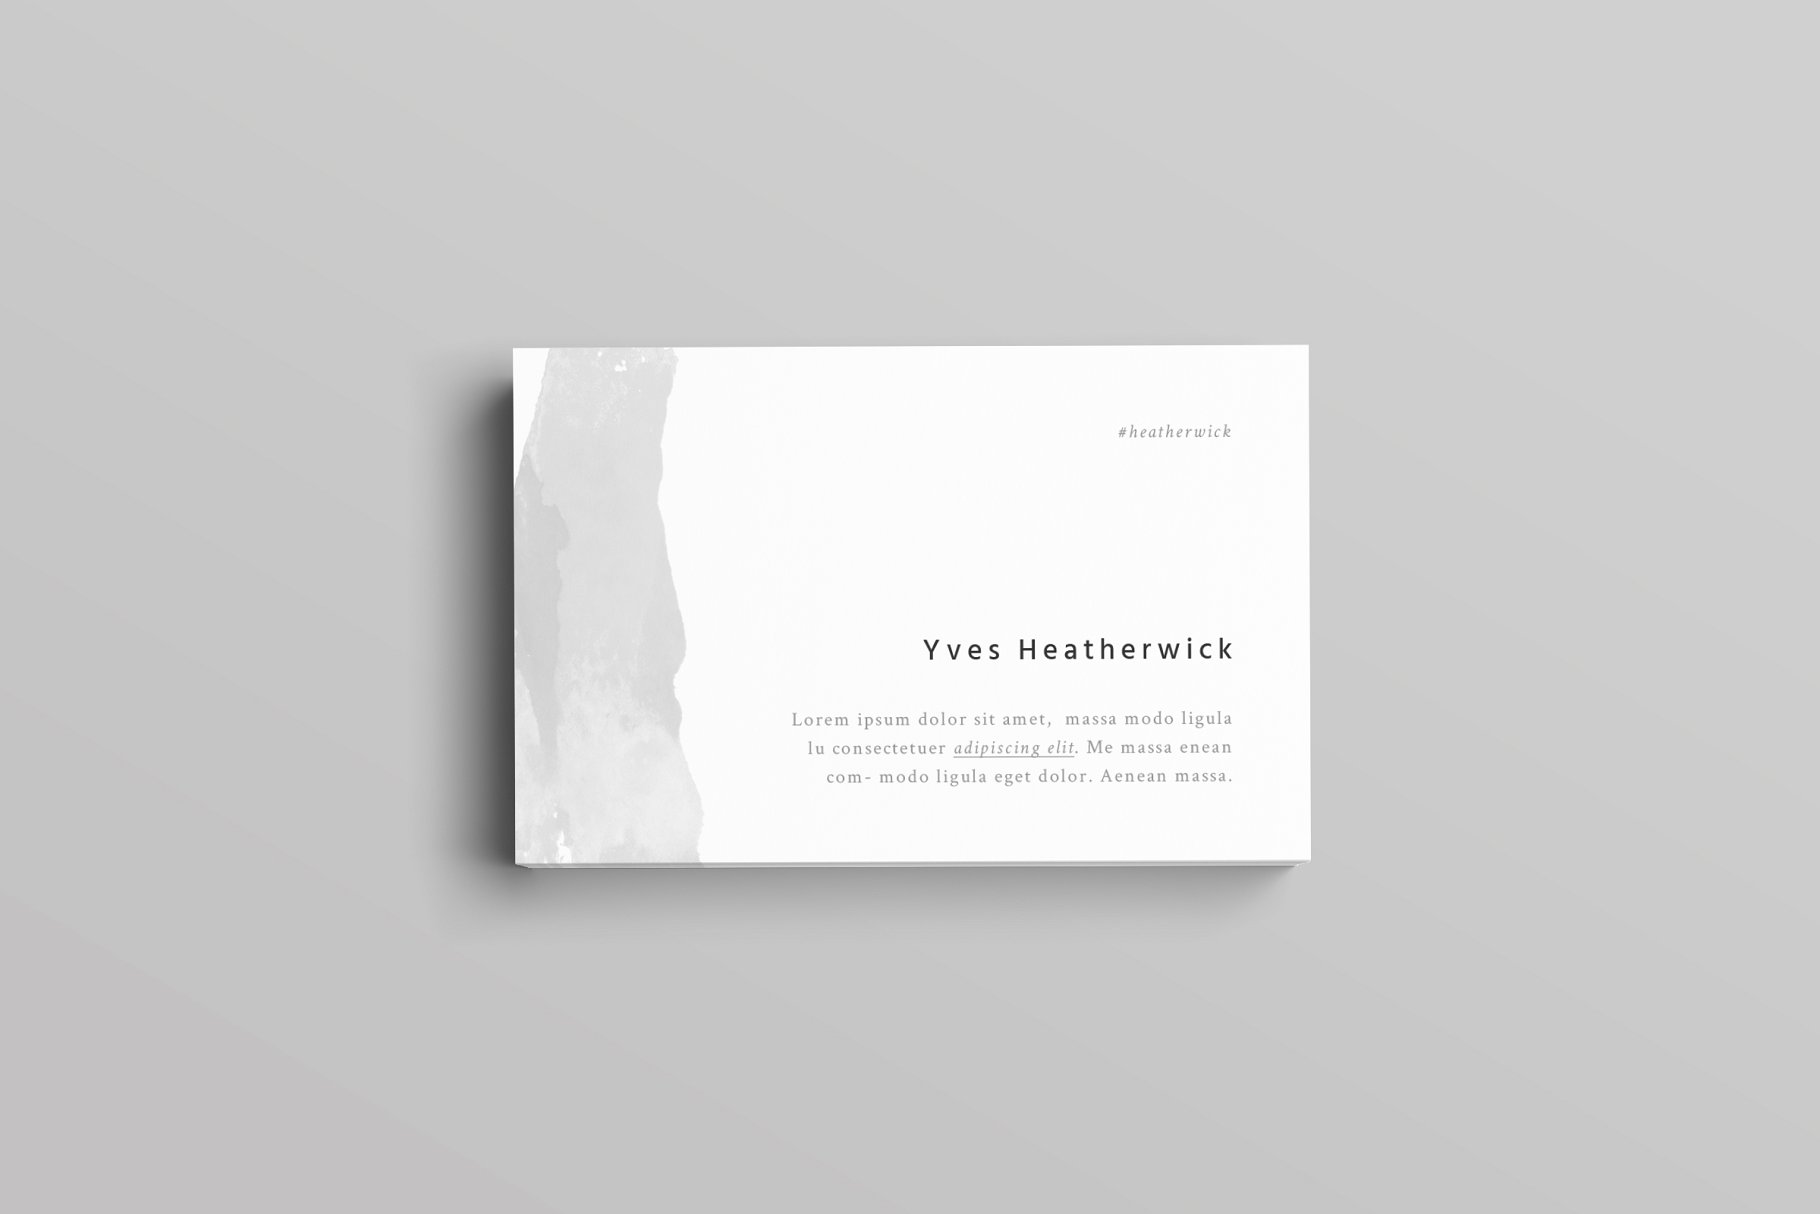 极简主义设计风格企业名片设计模板 Heatherwick Business Card Template插图(3)